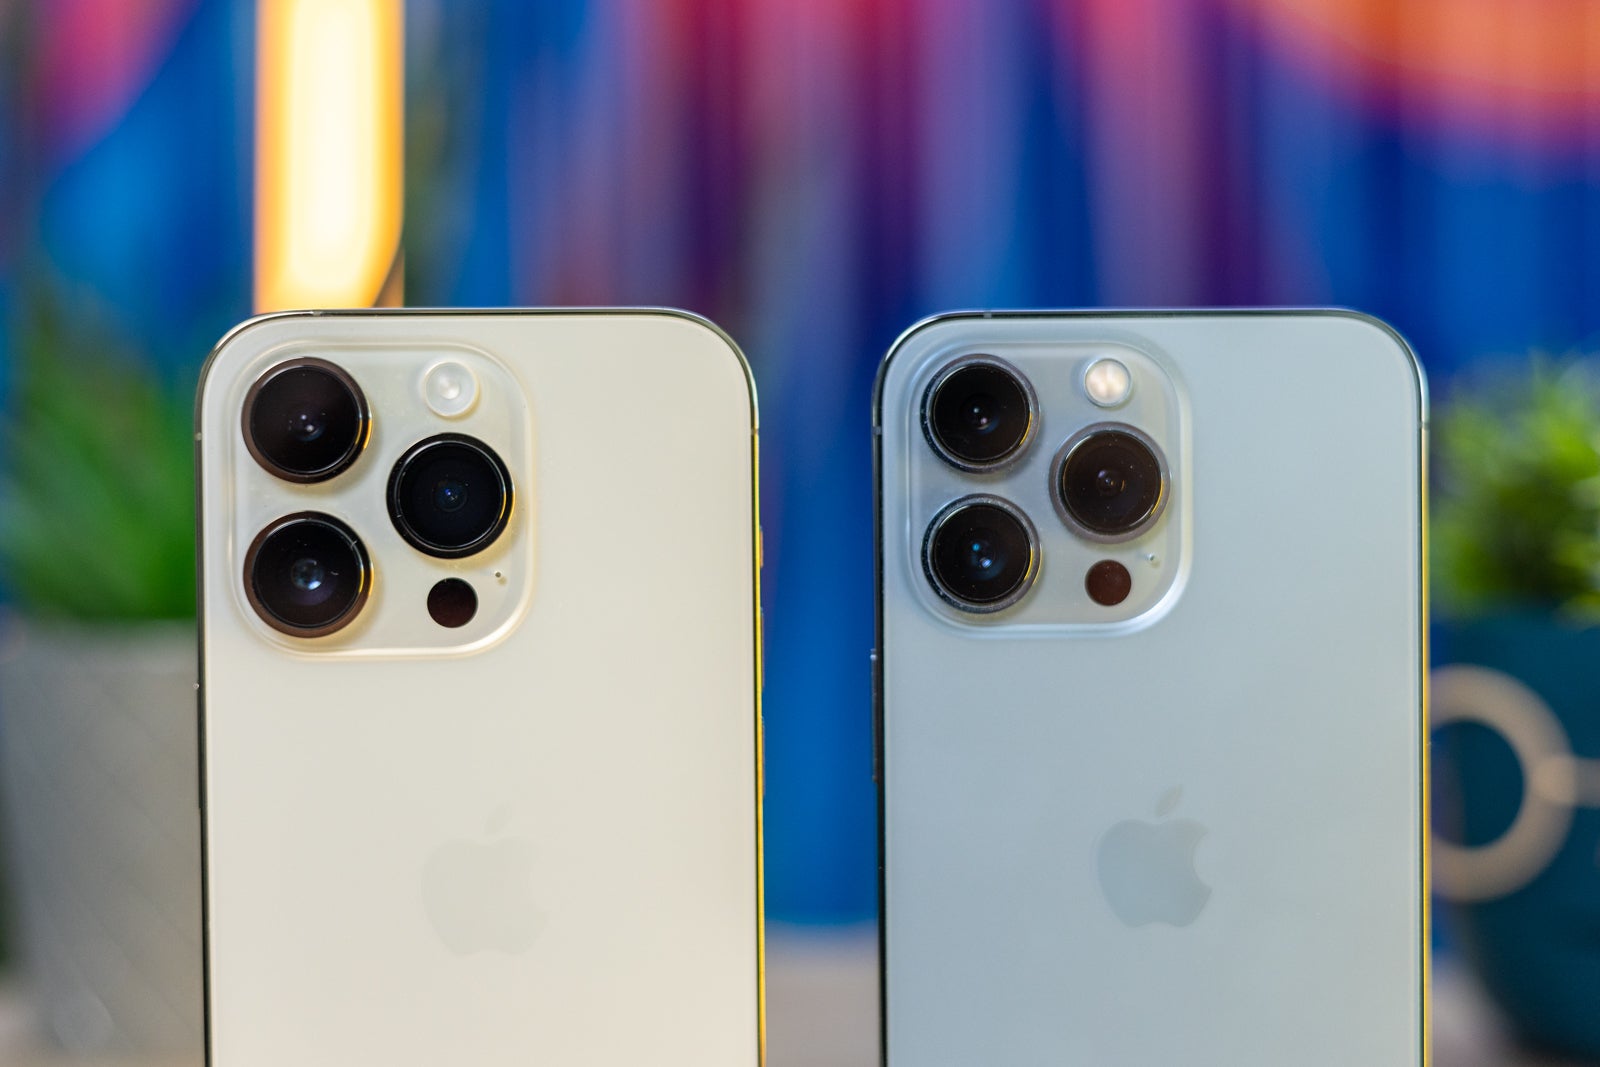 (Image Credit - PhoneArena) iPhone 14 Pro Max vs Pixel 6 Pro cameras - iPhone 14 Pro vs iPhone 13 Pro: main differences